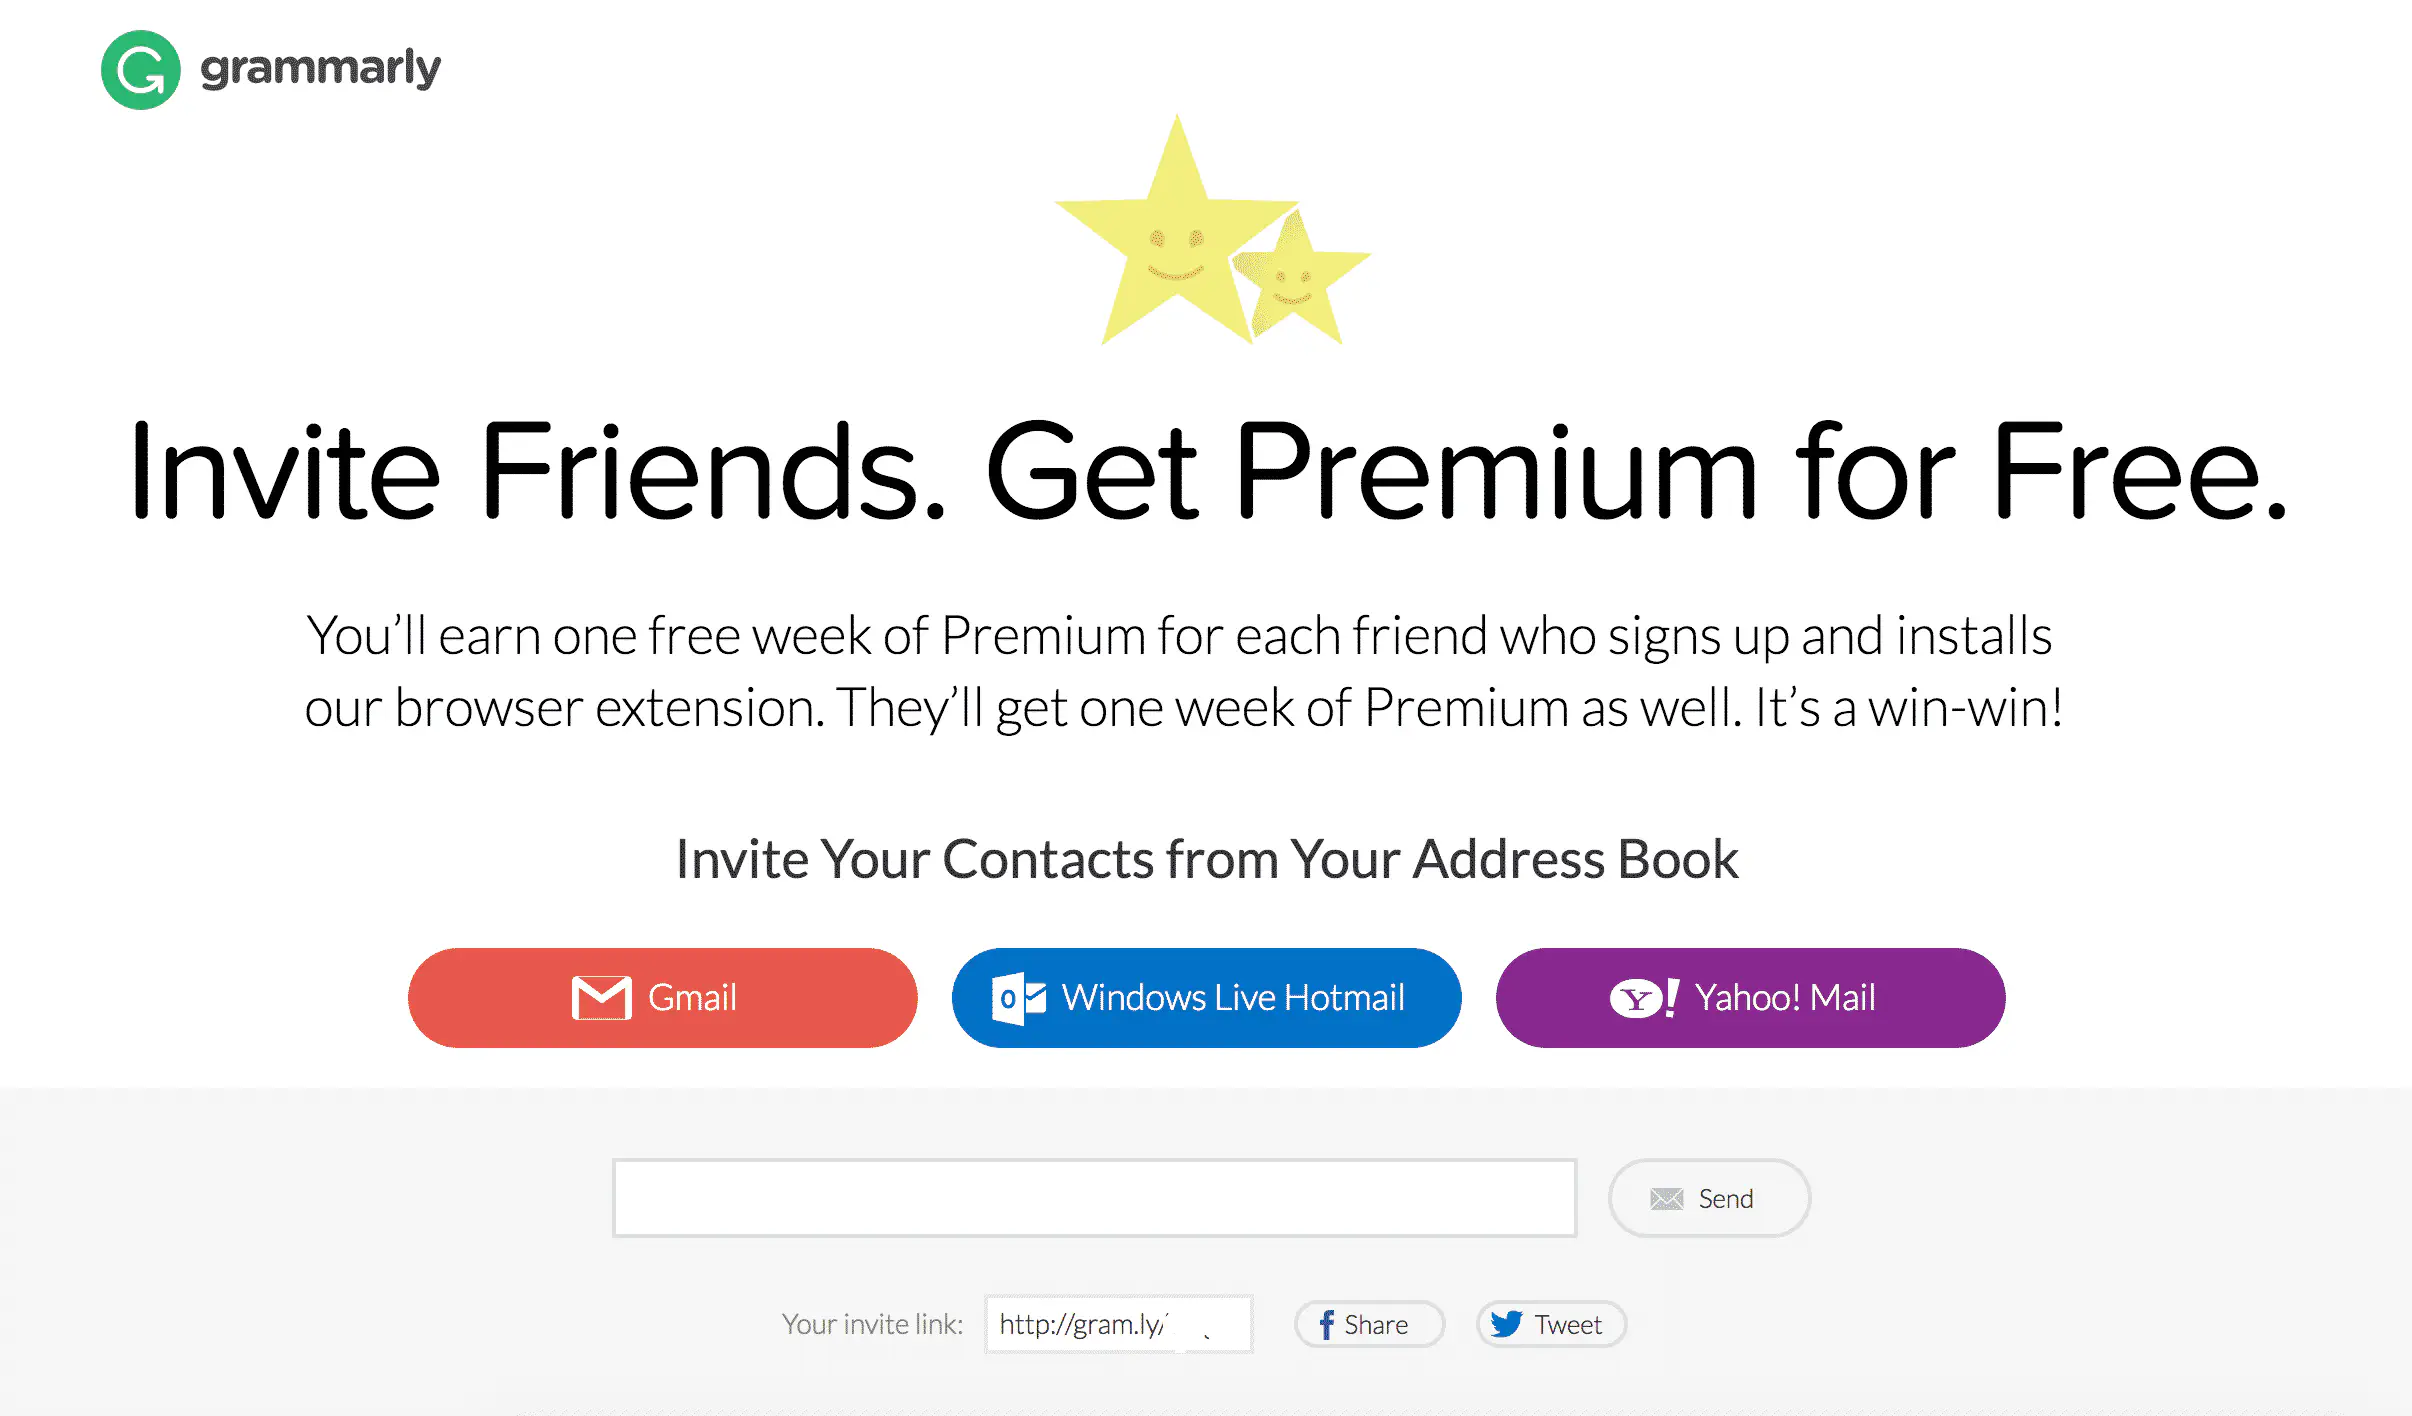 Как получить бесплатный аккаунт Grammarly Premium на всю жизнь